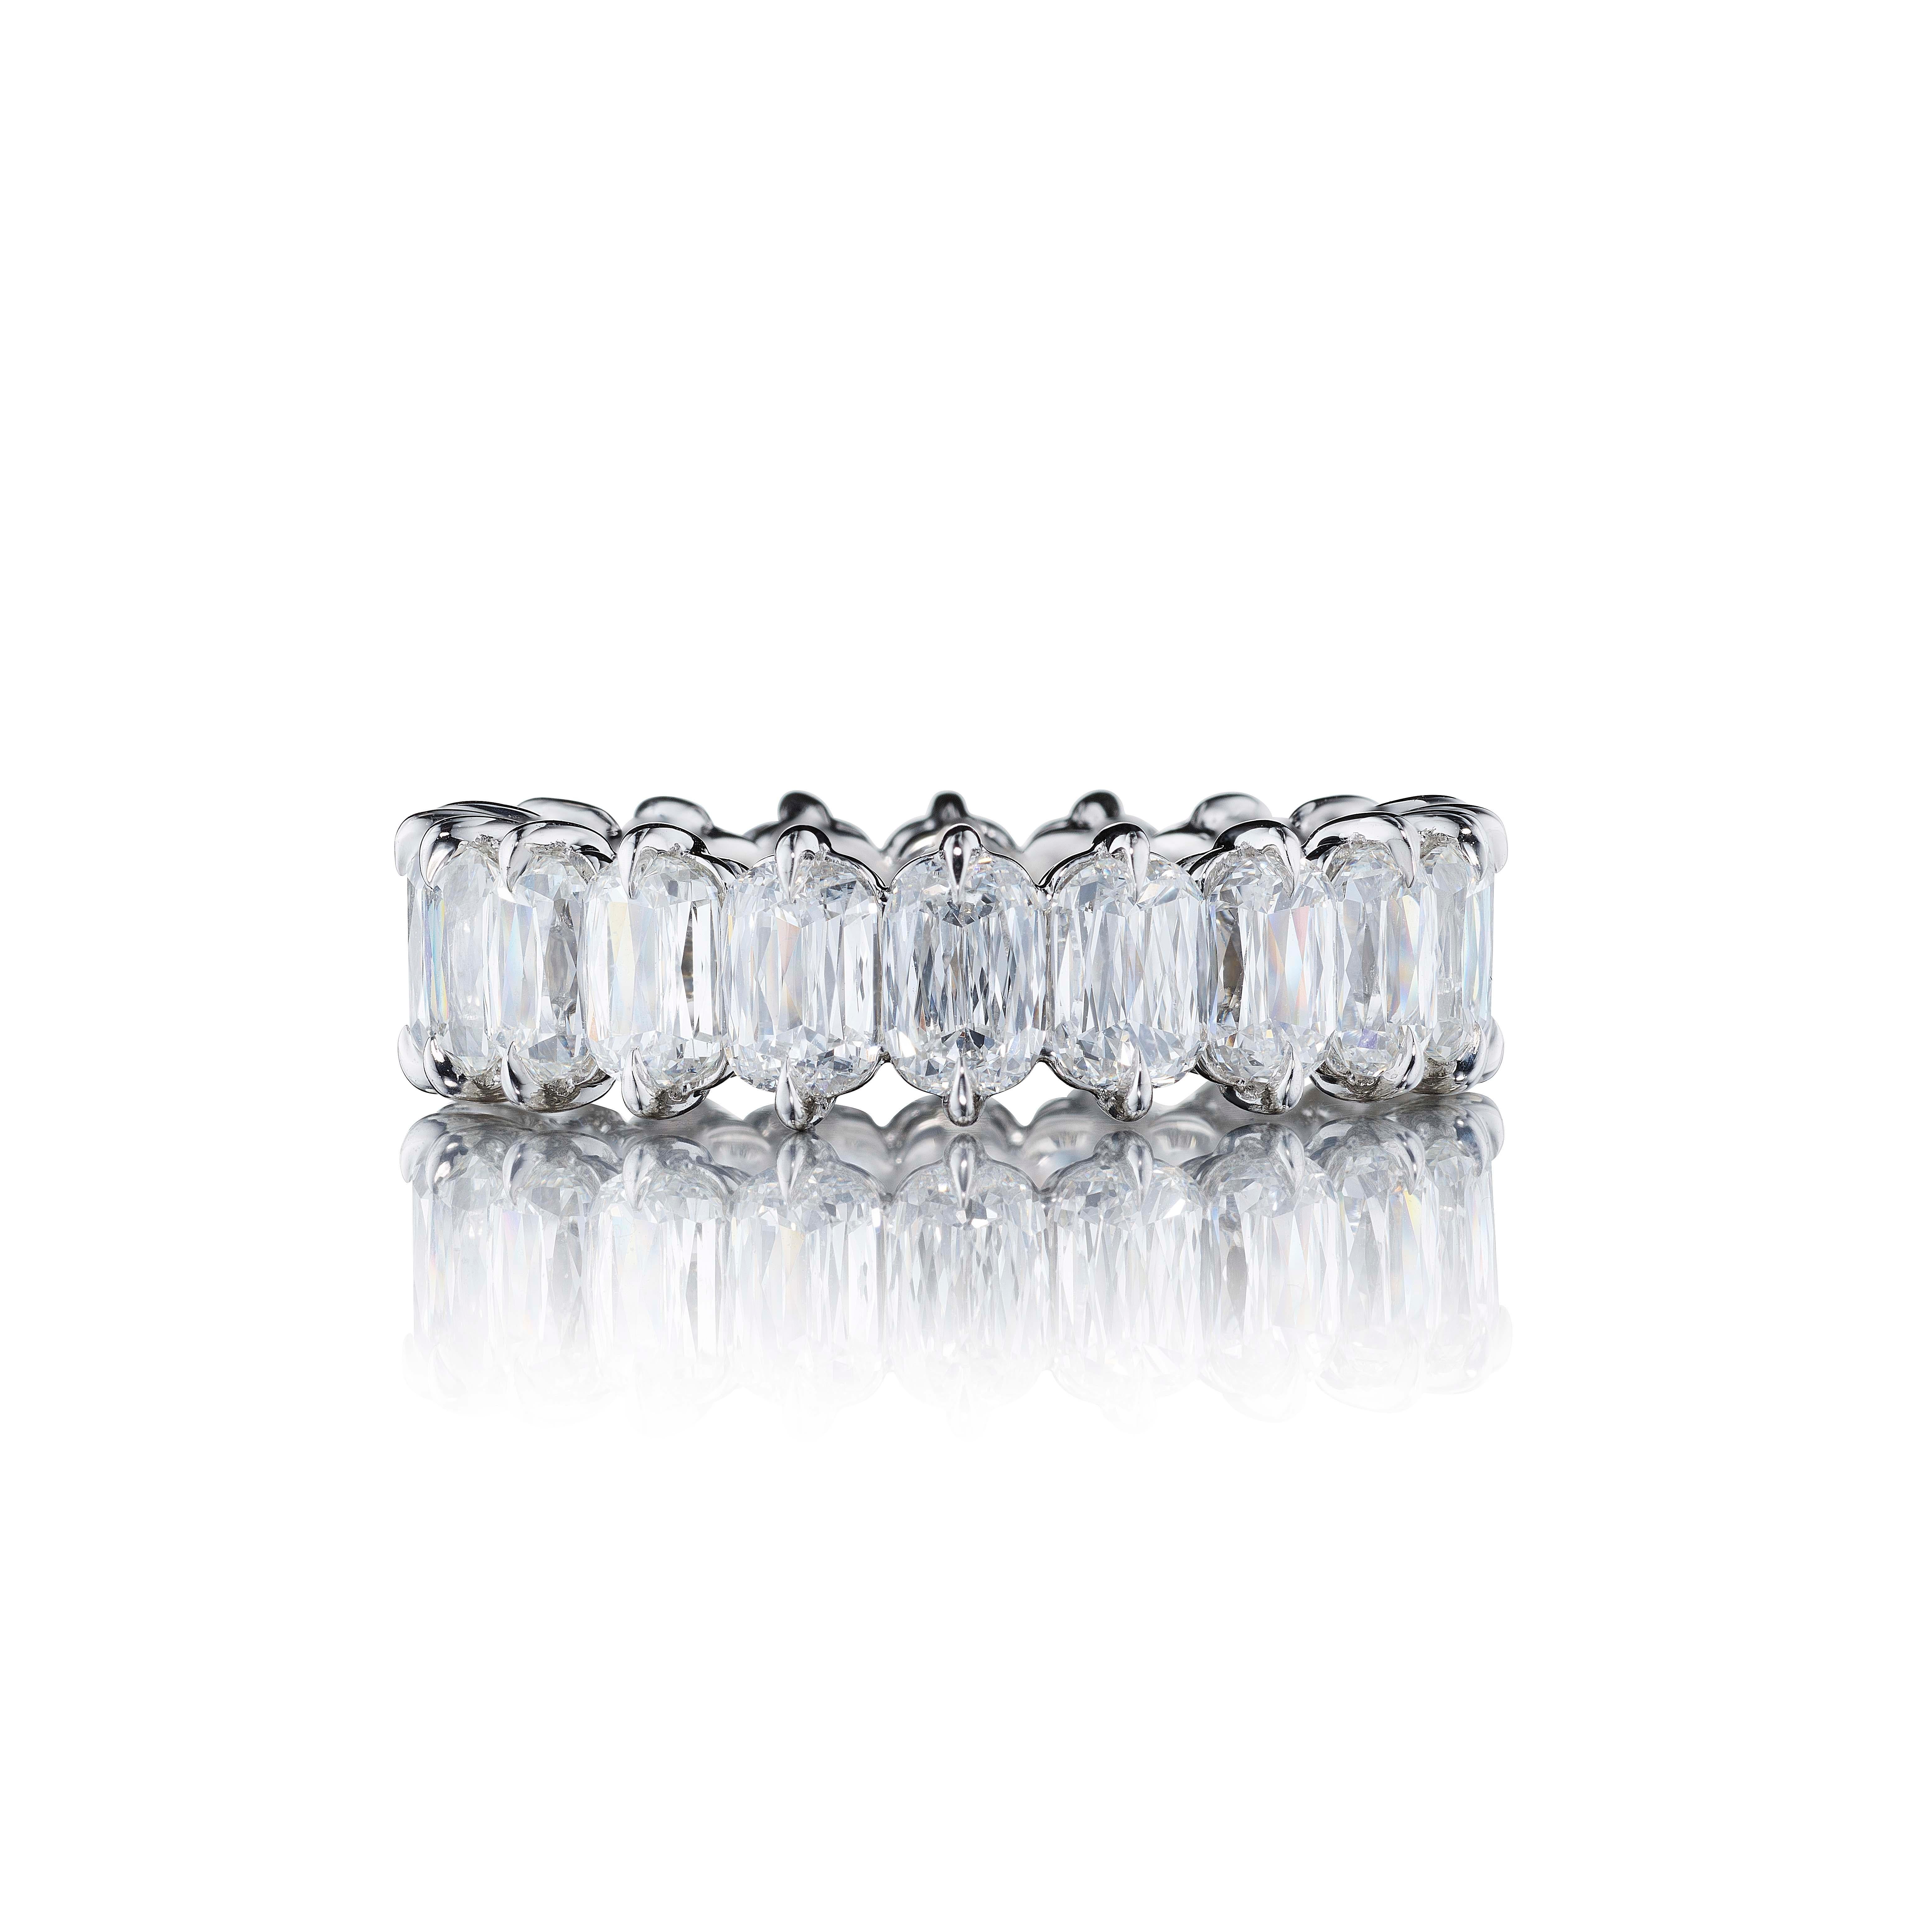 20 Diamants taille coussin pesant 6.50 Carats. Les pierres sont de couleur D-F et de clarté VS-VVS.
En platine.

La bague peut être légèrement ajustée ou une nouvelle monture peut être fabriquée pour s'adapter à n'importe quelle taille de